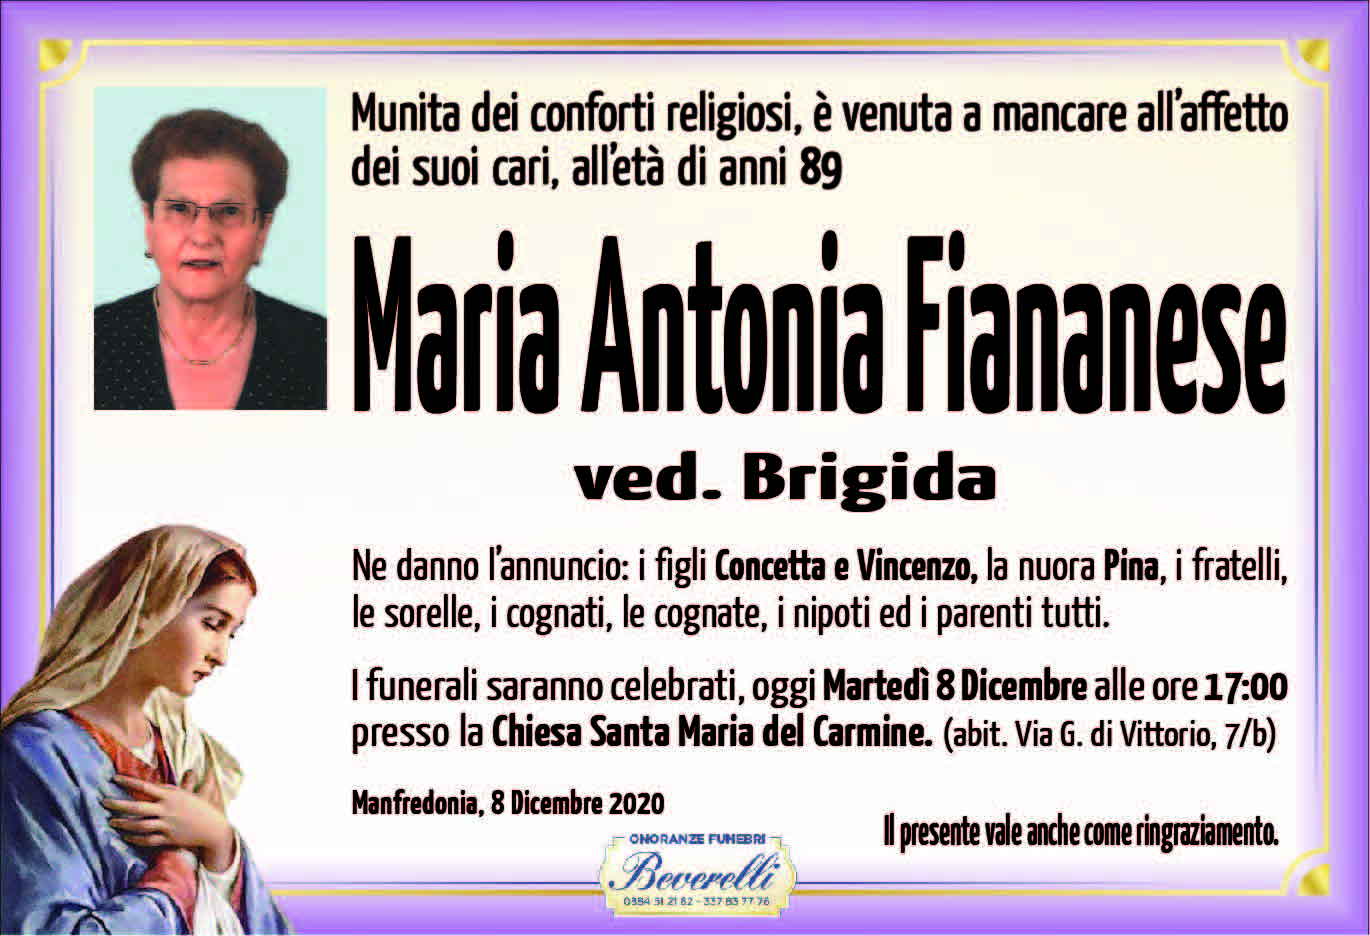 Maria Antonia Fiananese